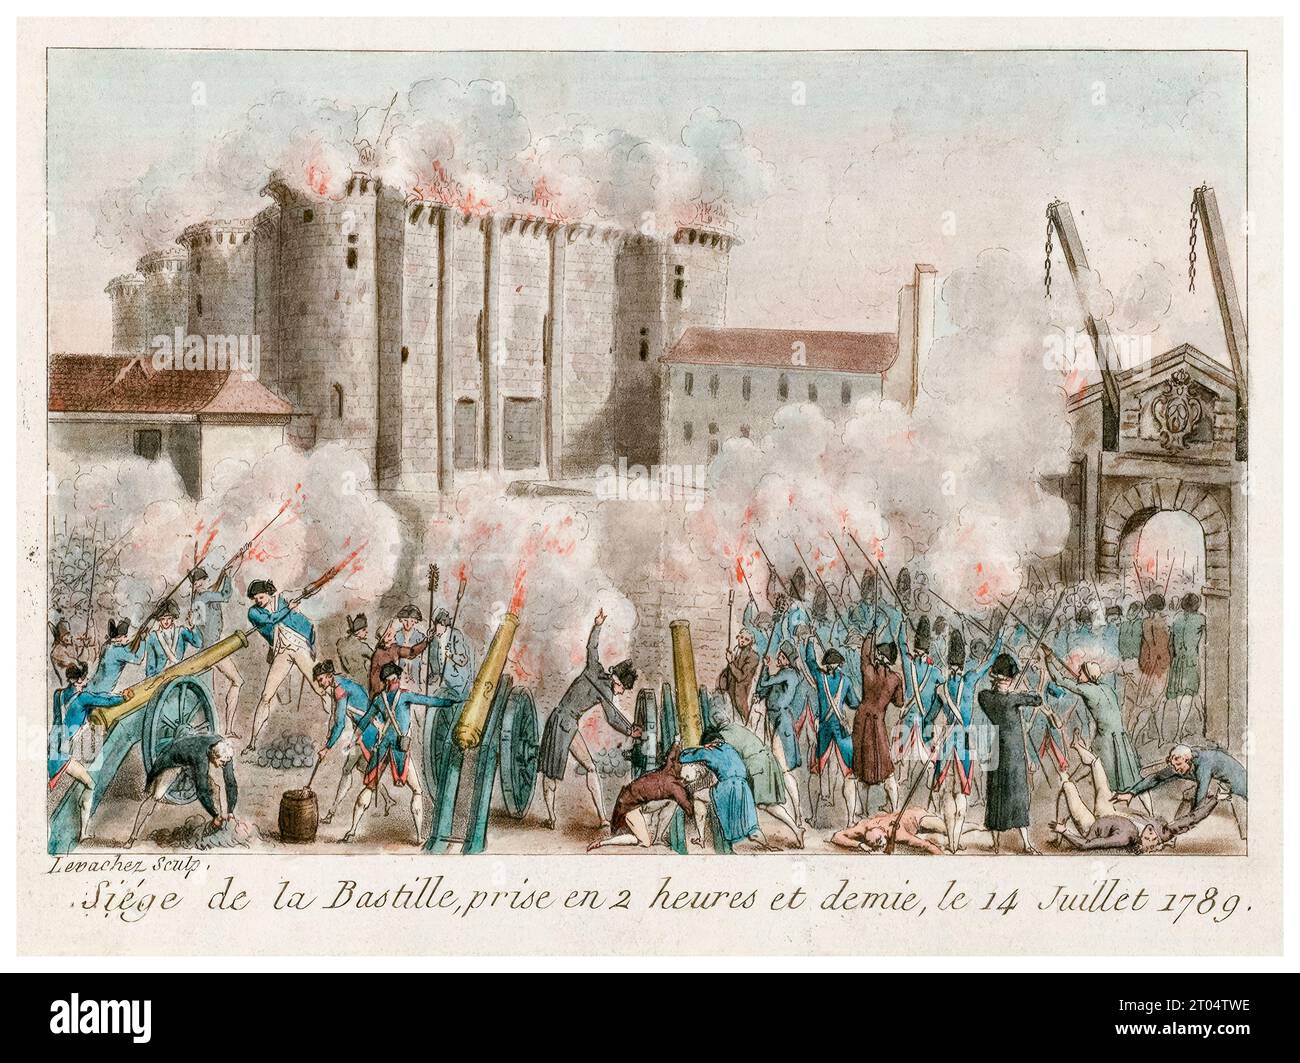 Prise de la Bastille, prise en deux heures et demie, le 14 juillet 1789, gravure colorée à la main par Charles-François-Gabriel le Vachez, 1789 Banque D'Images